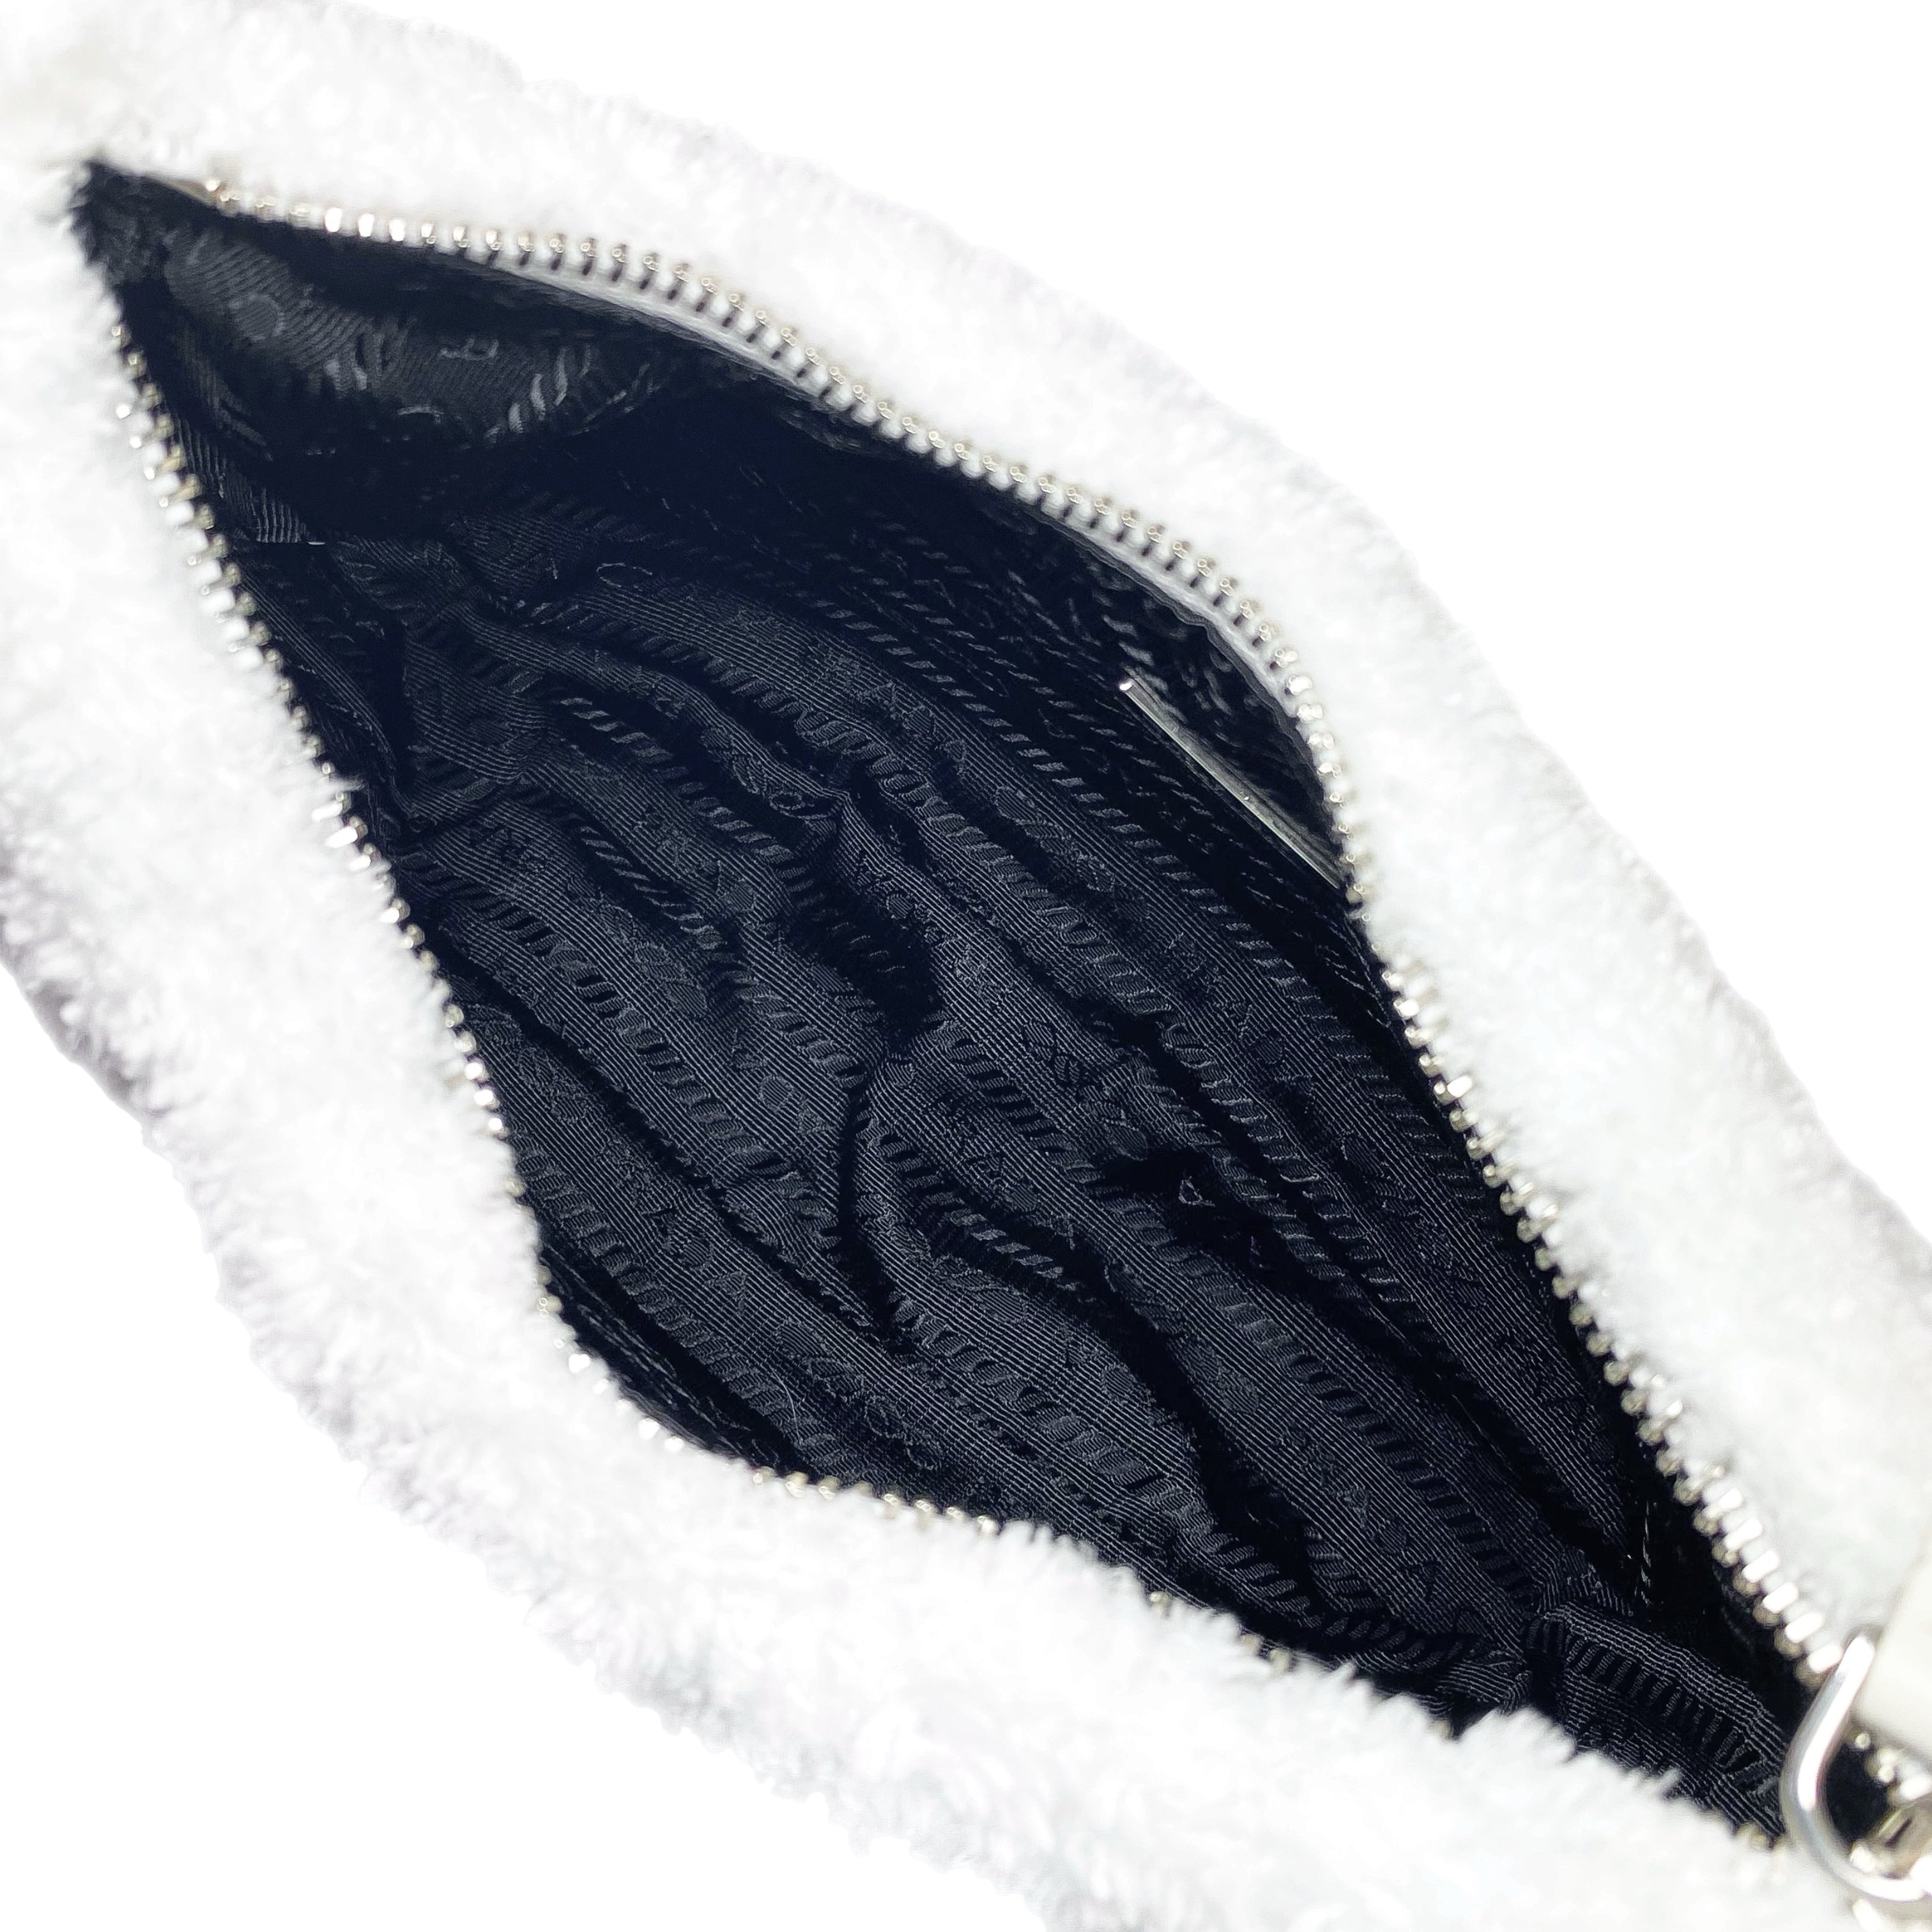 Prada White Terry Cloth Re-Edition Hobo Bag